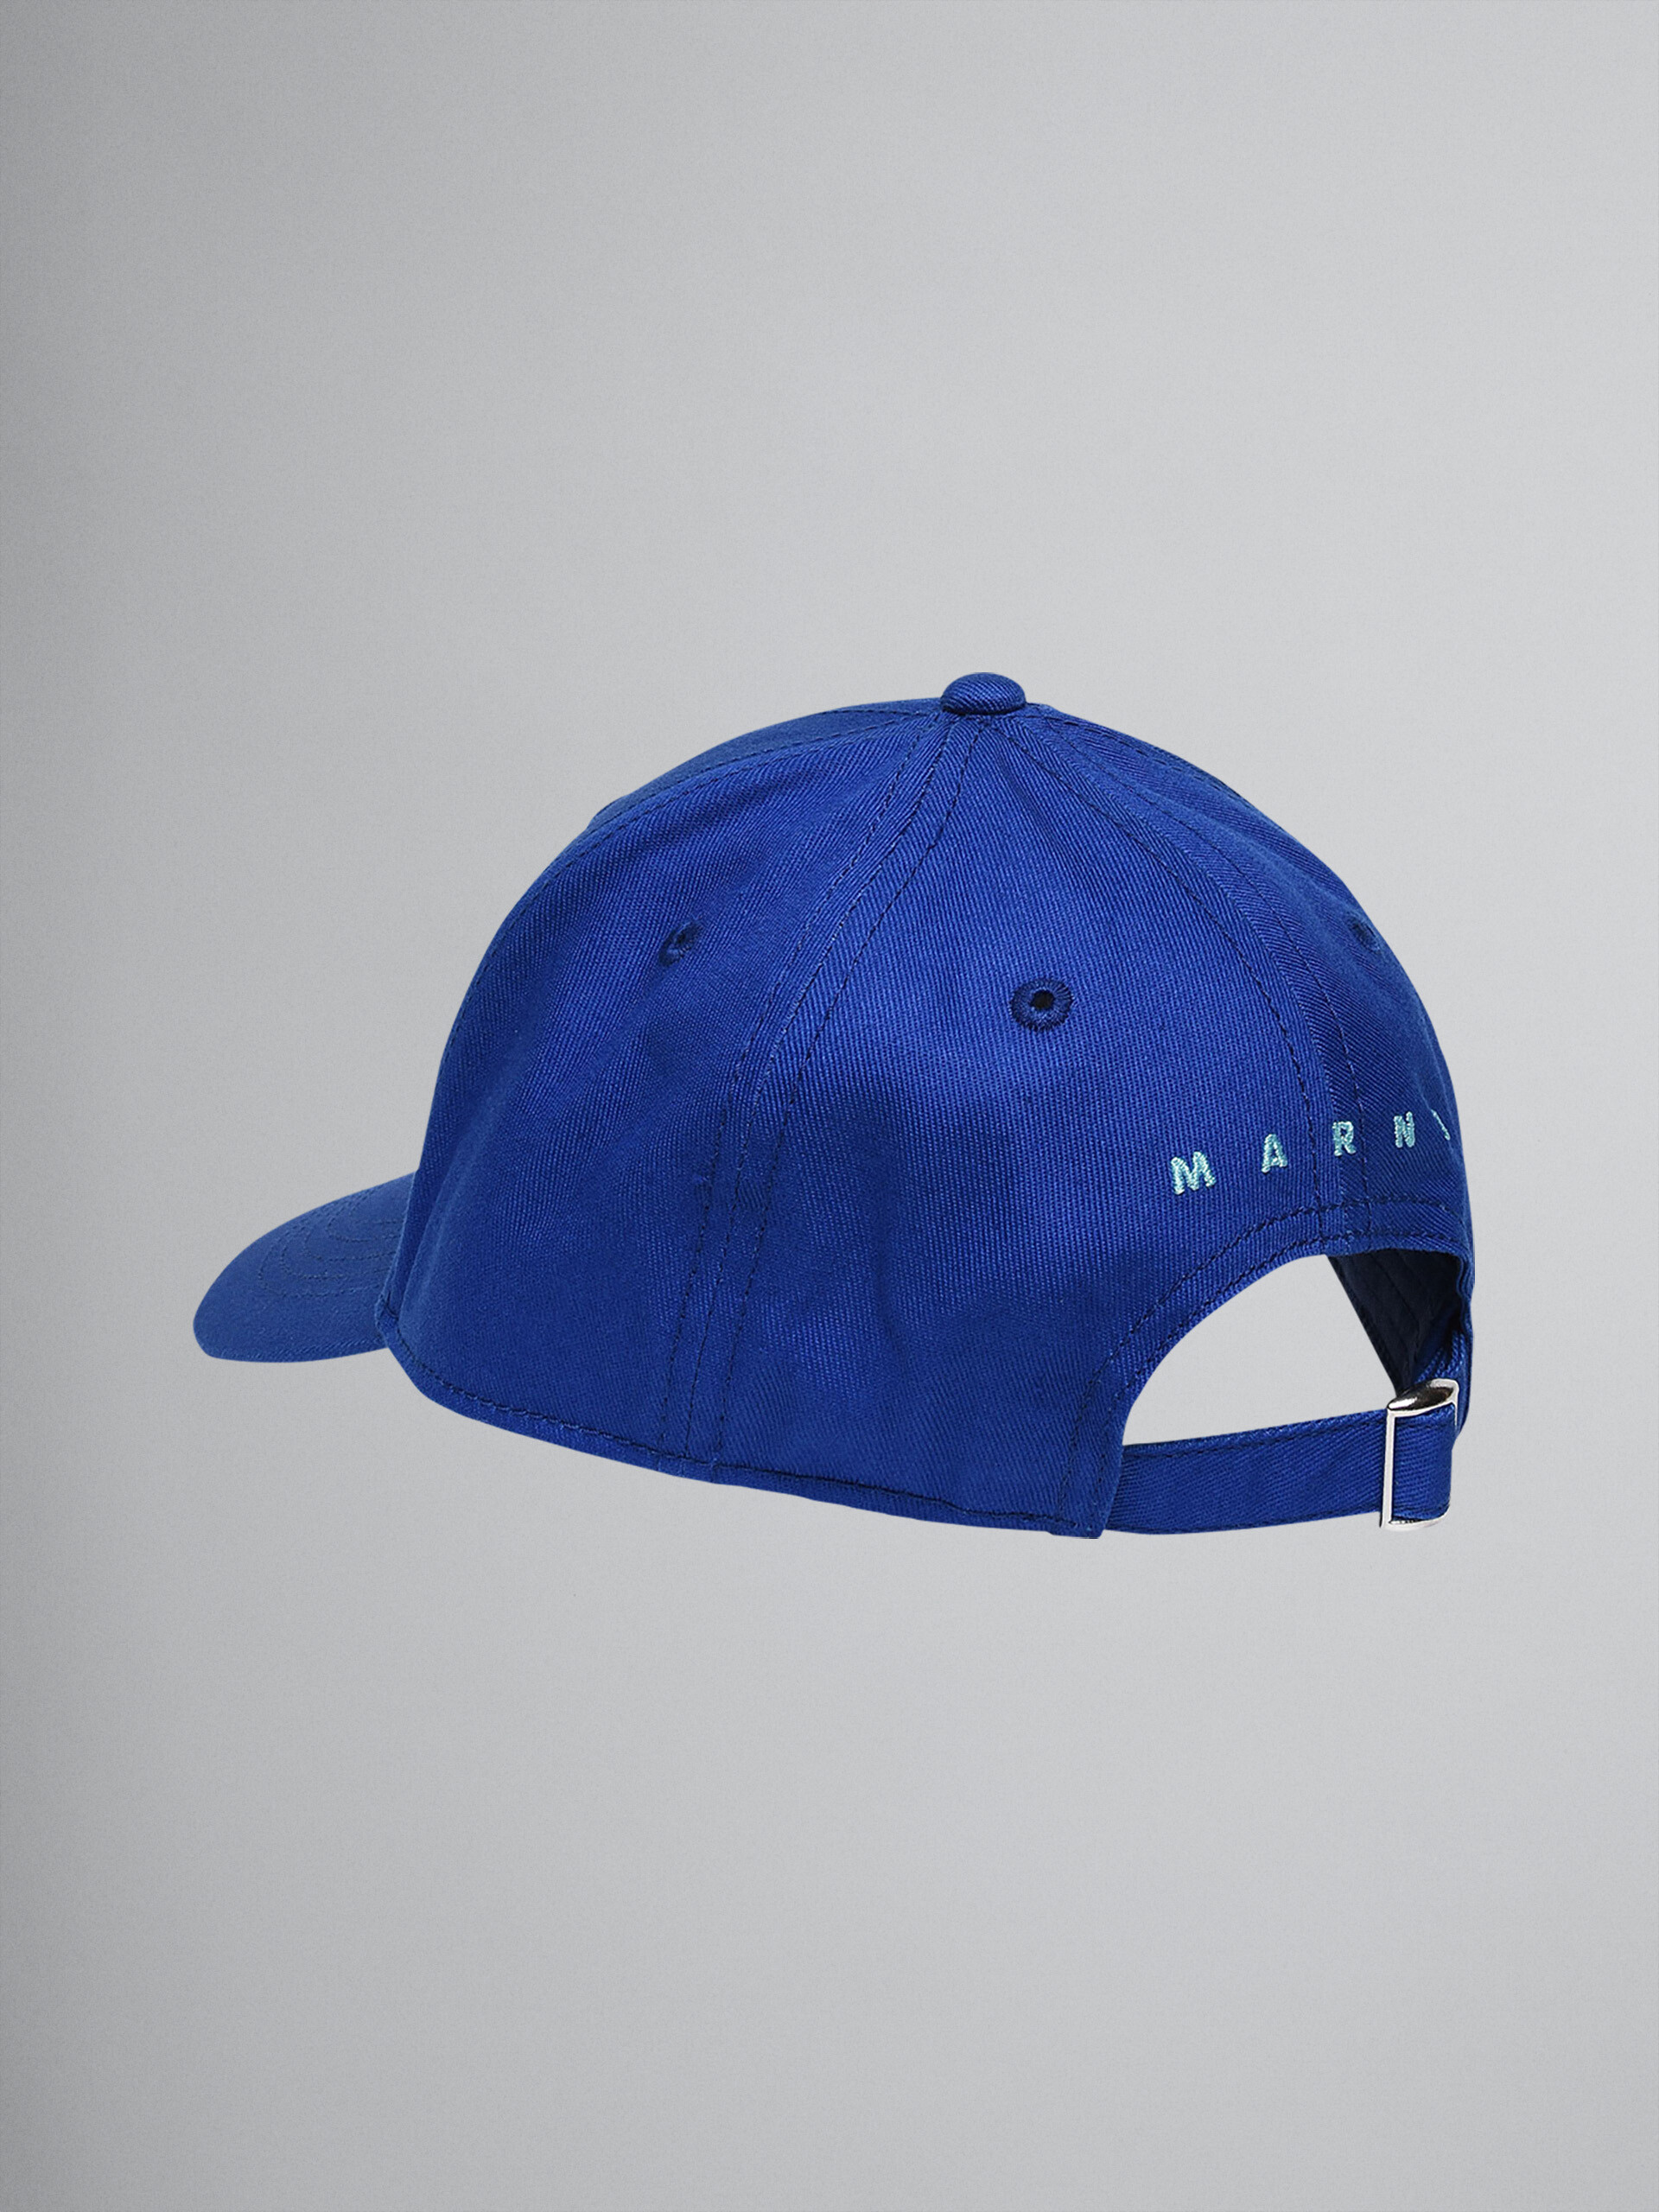 Gorra de béisbol "M" de gabardina de algodón azul - Gorras - Image 2